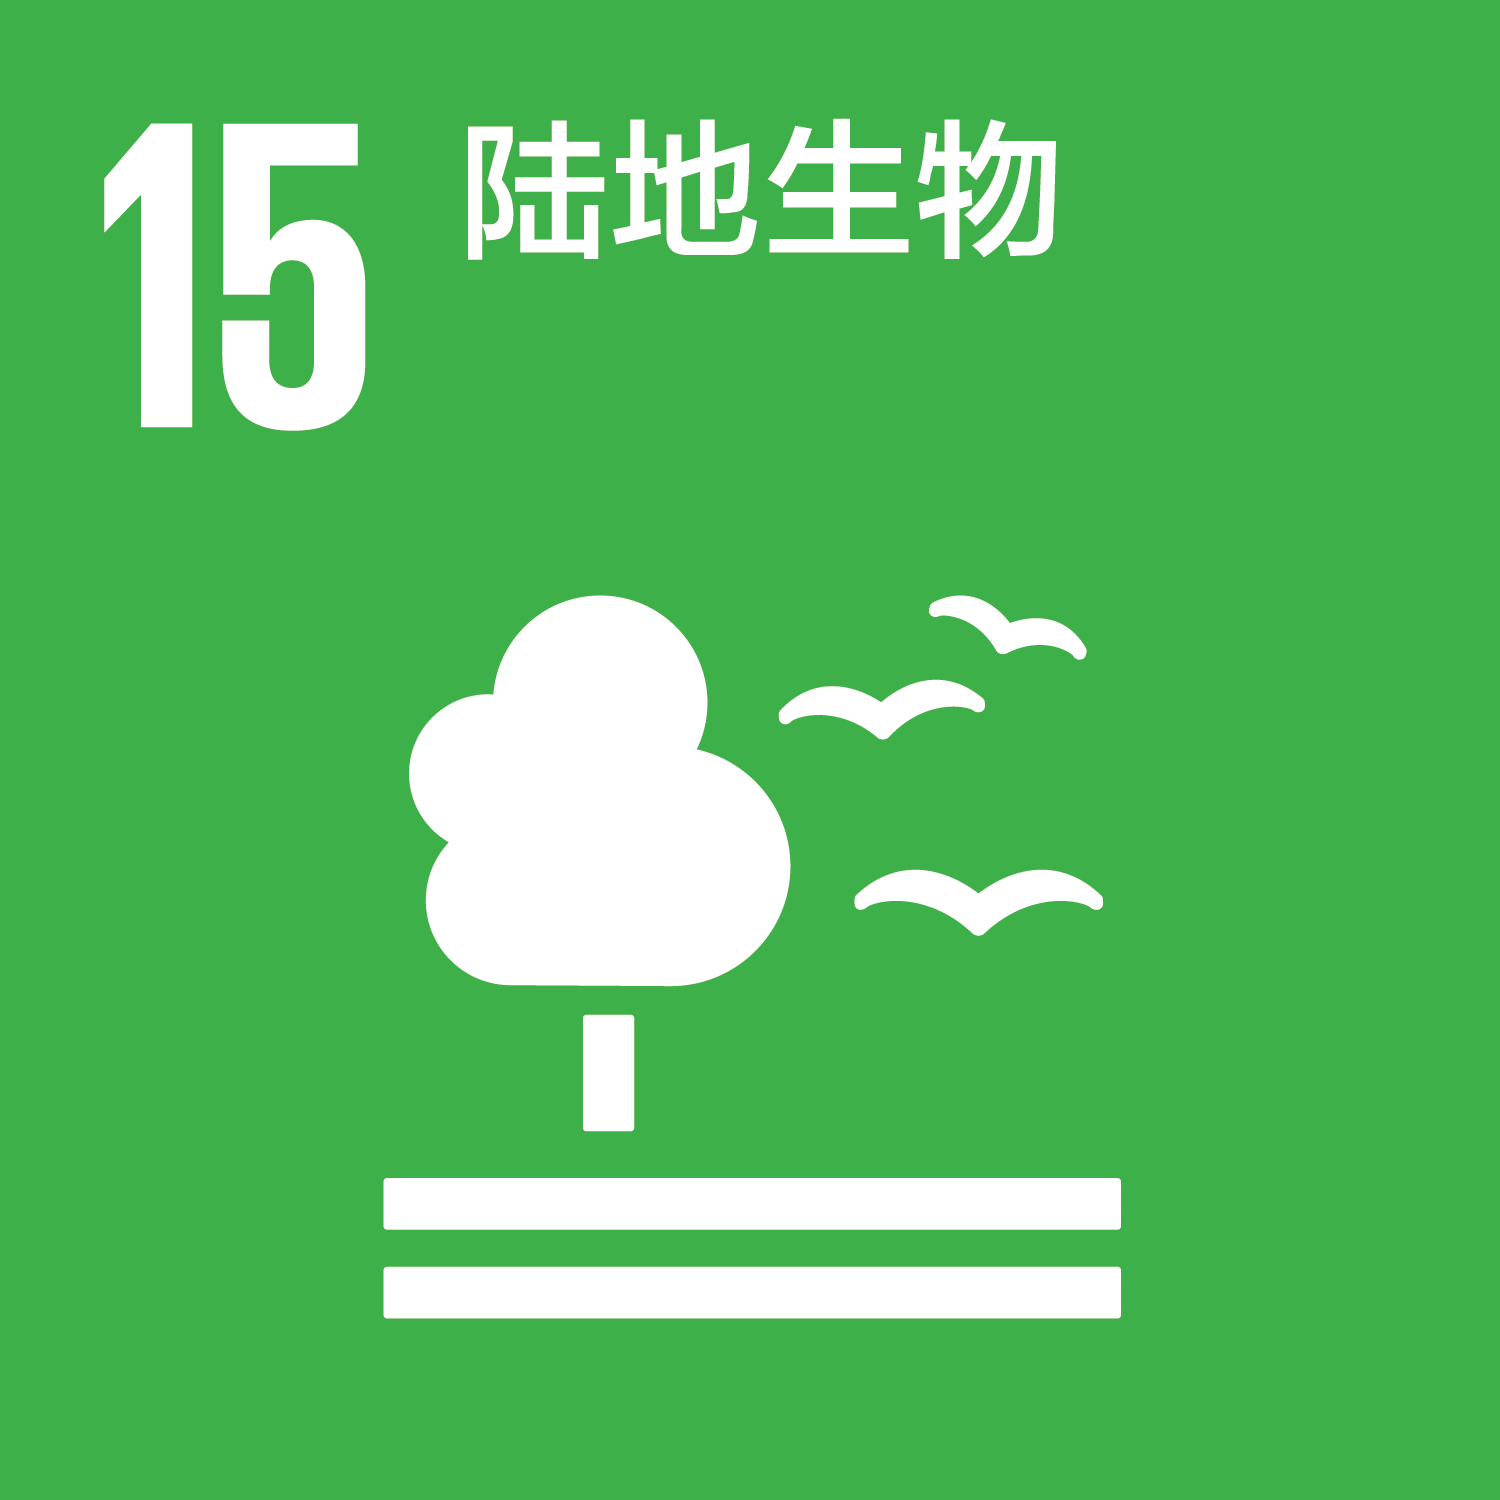 可持续发展目标-15陆地生物